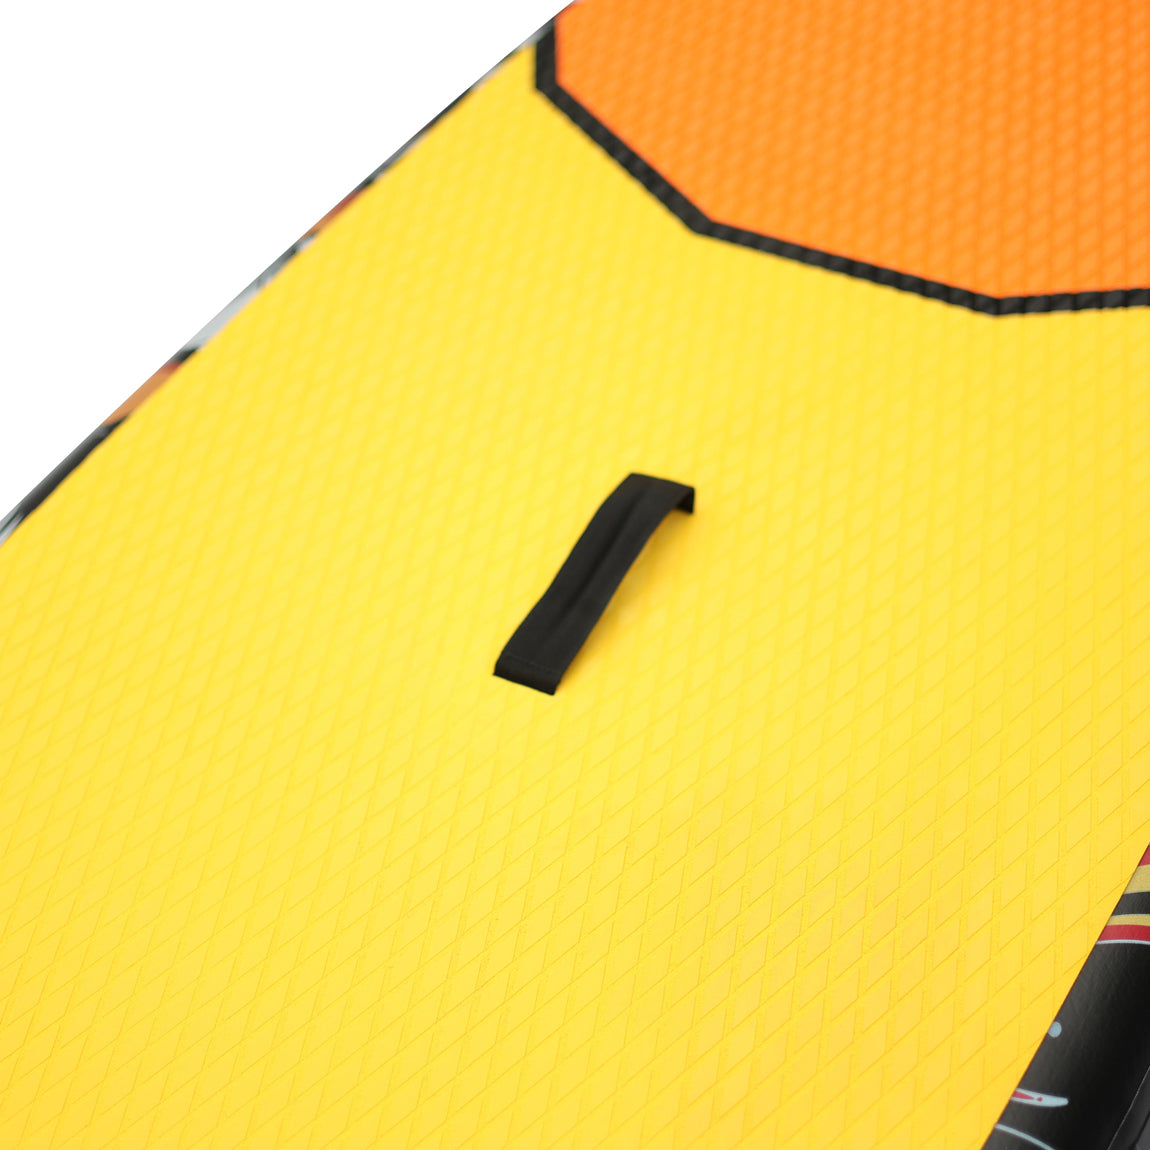 Tortuga Şişirilebilir Paddle Board - SUP 320 cm